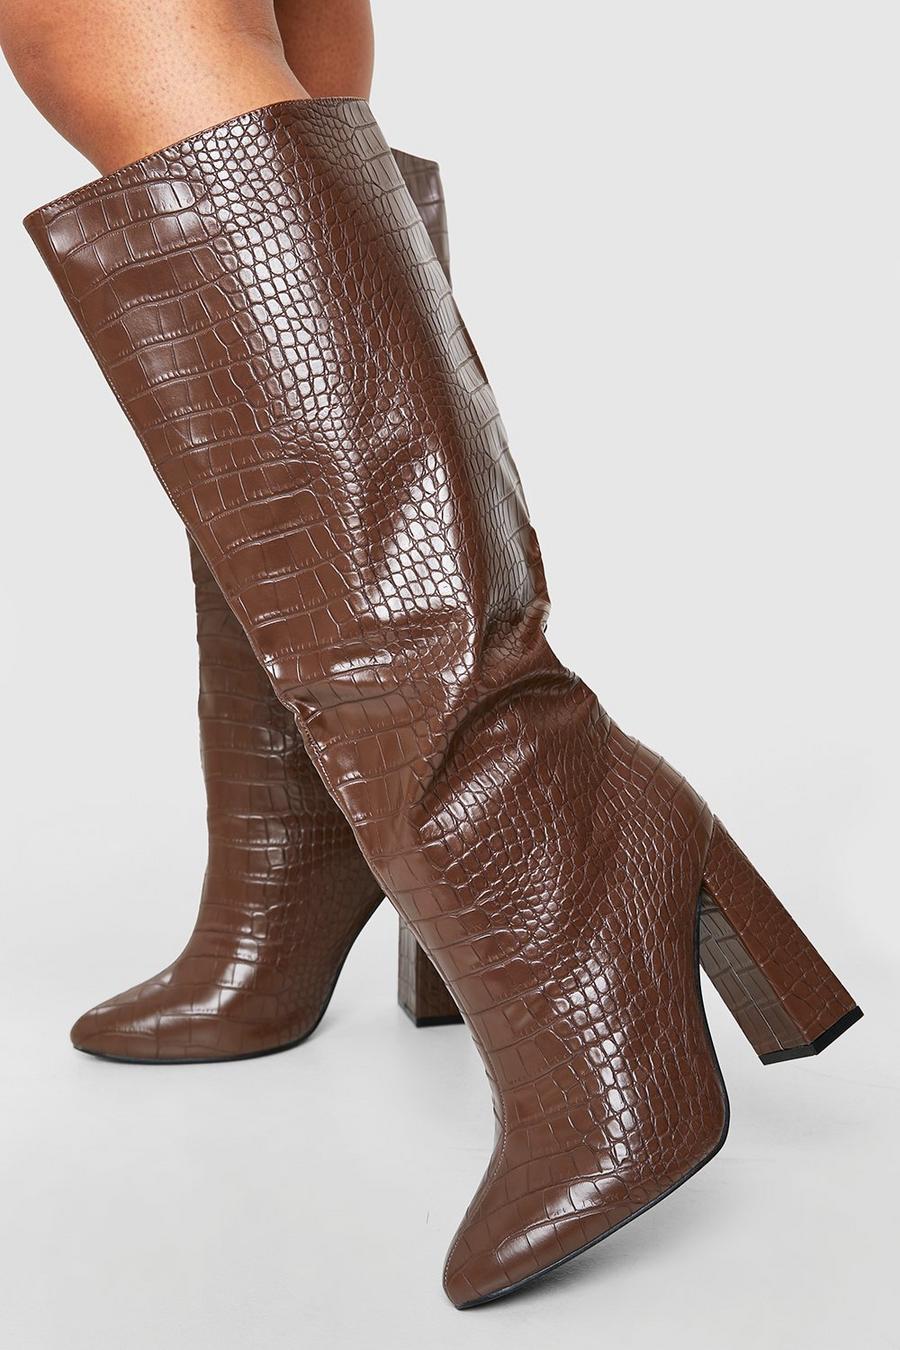 Chocolate brown Wide Width Knee High Block Heel Croc Boots